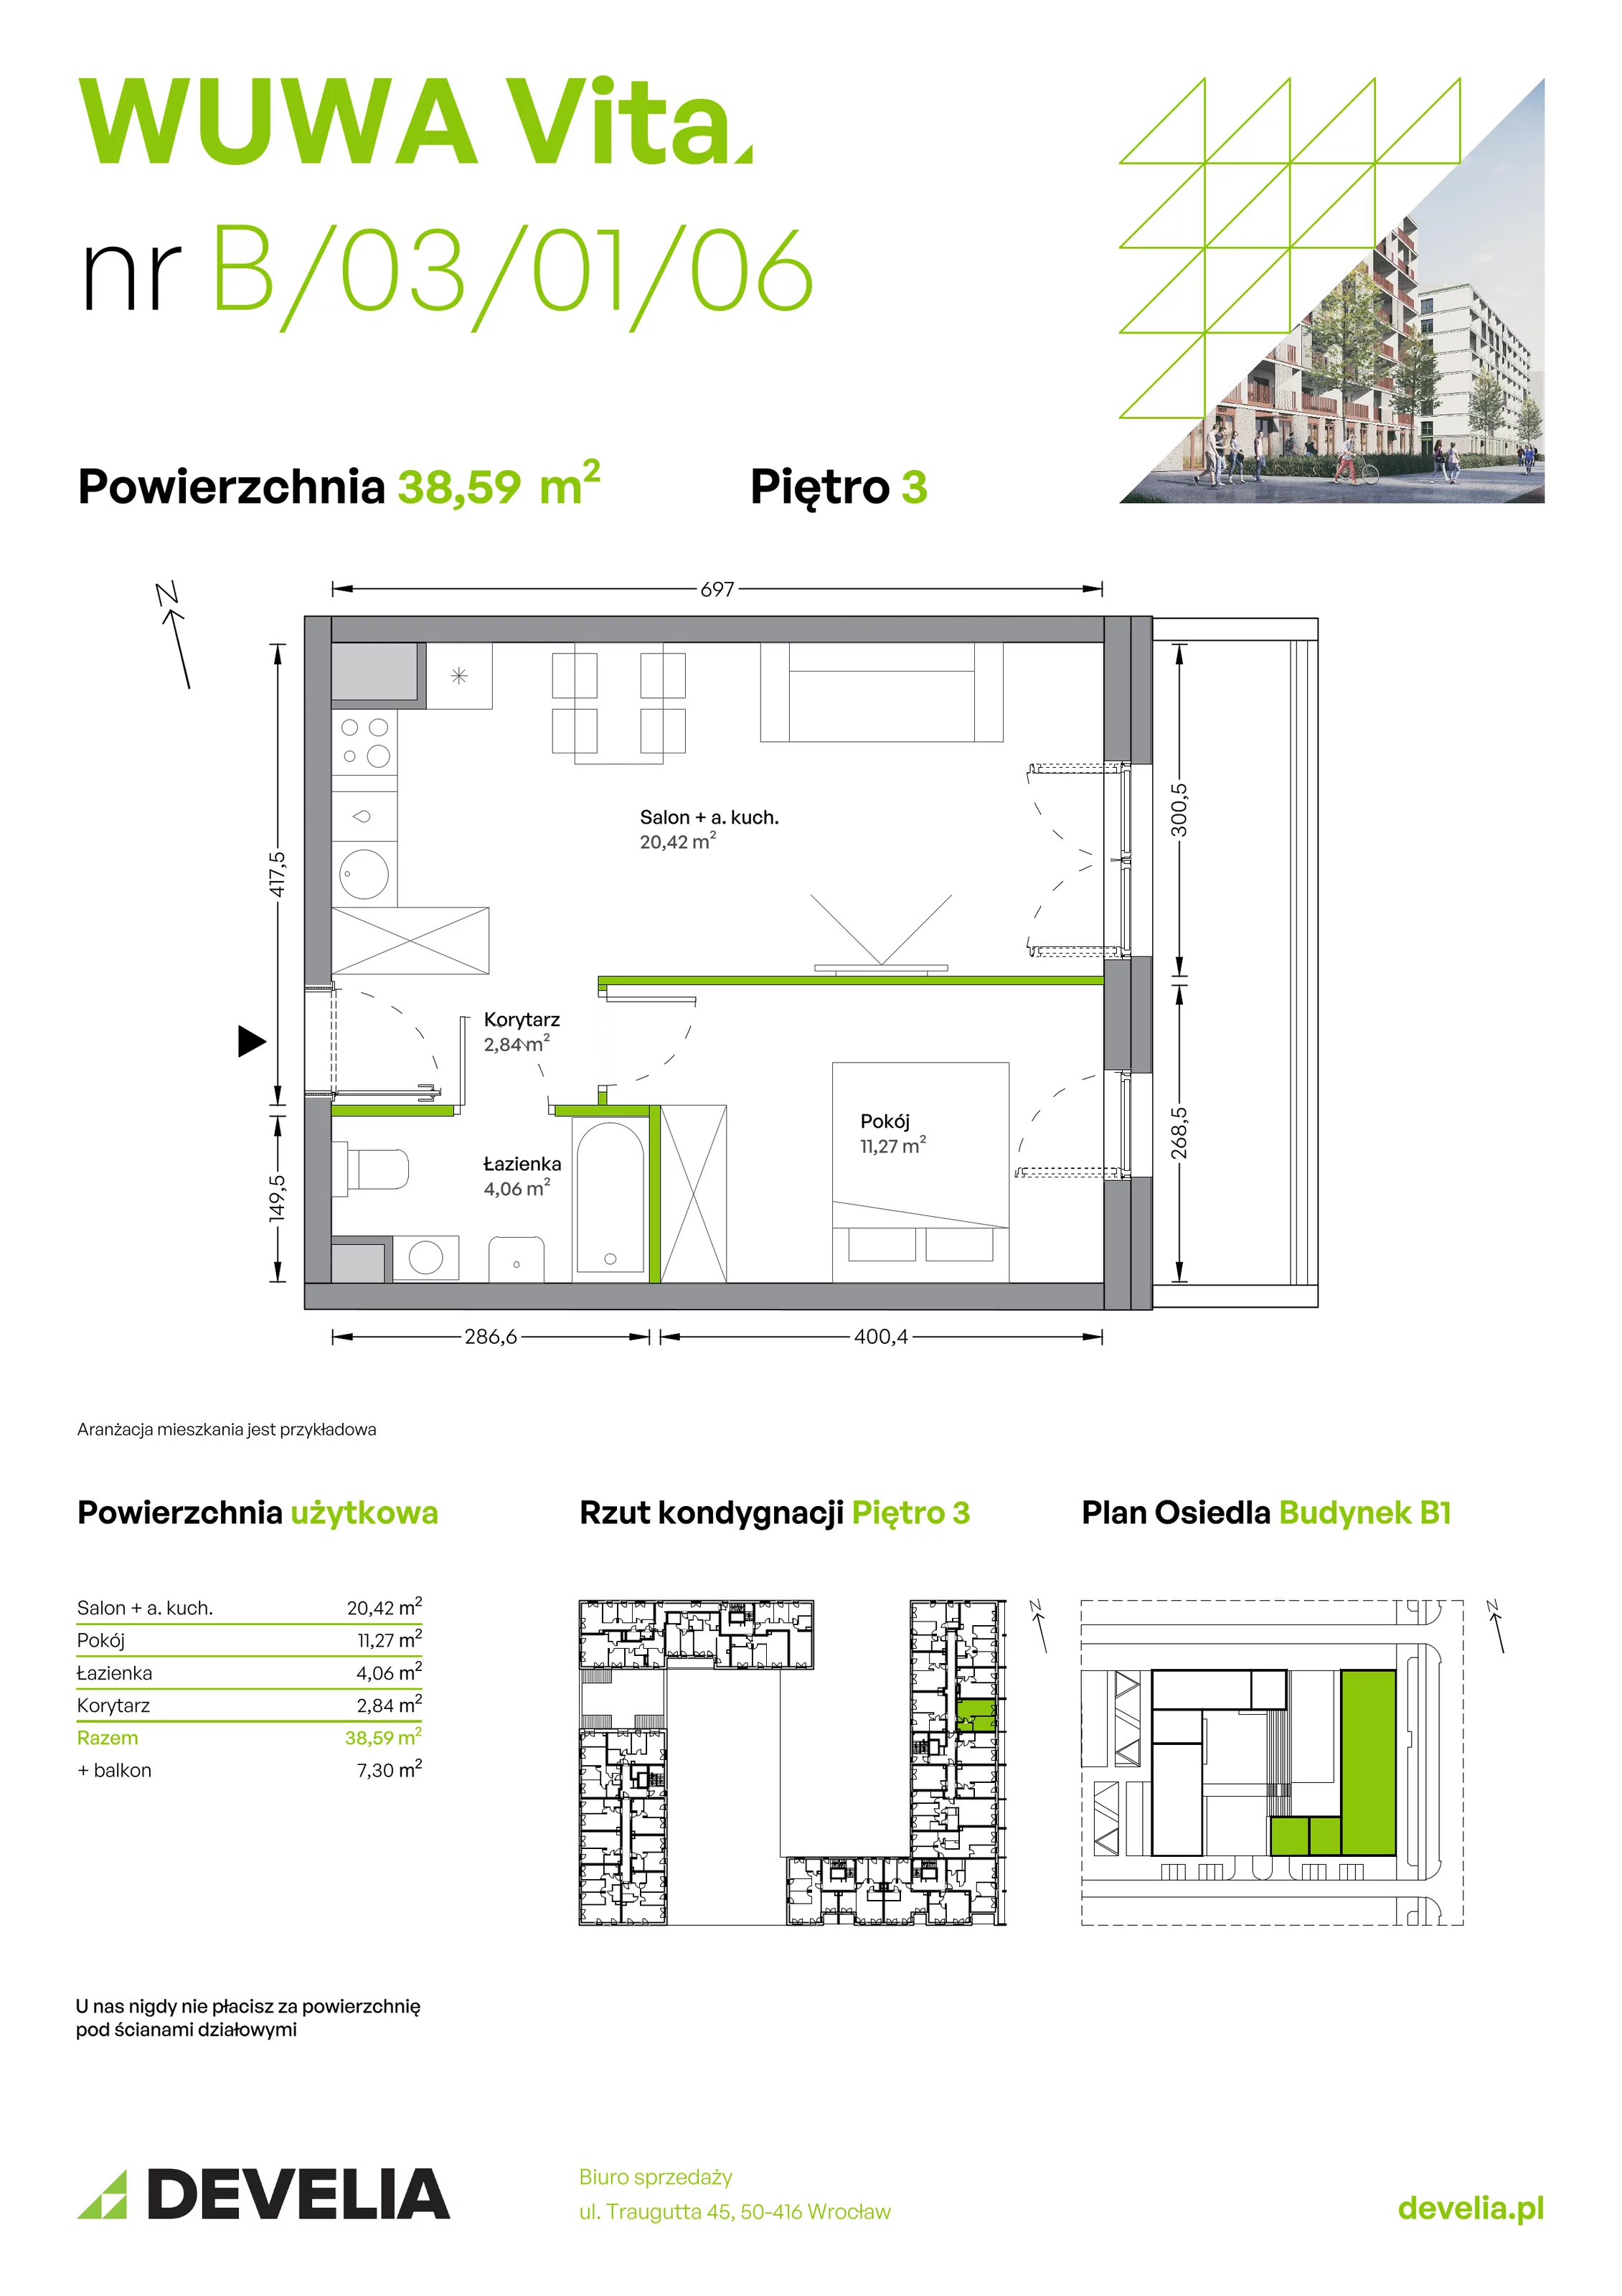 Mieszkanie 38,59 m², piętro 3, oferta nr B.03.01.06, WUWA Vita, Wrocław, Żerniki, Fabryczna, ul. Tadeusza Brzozy